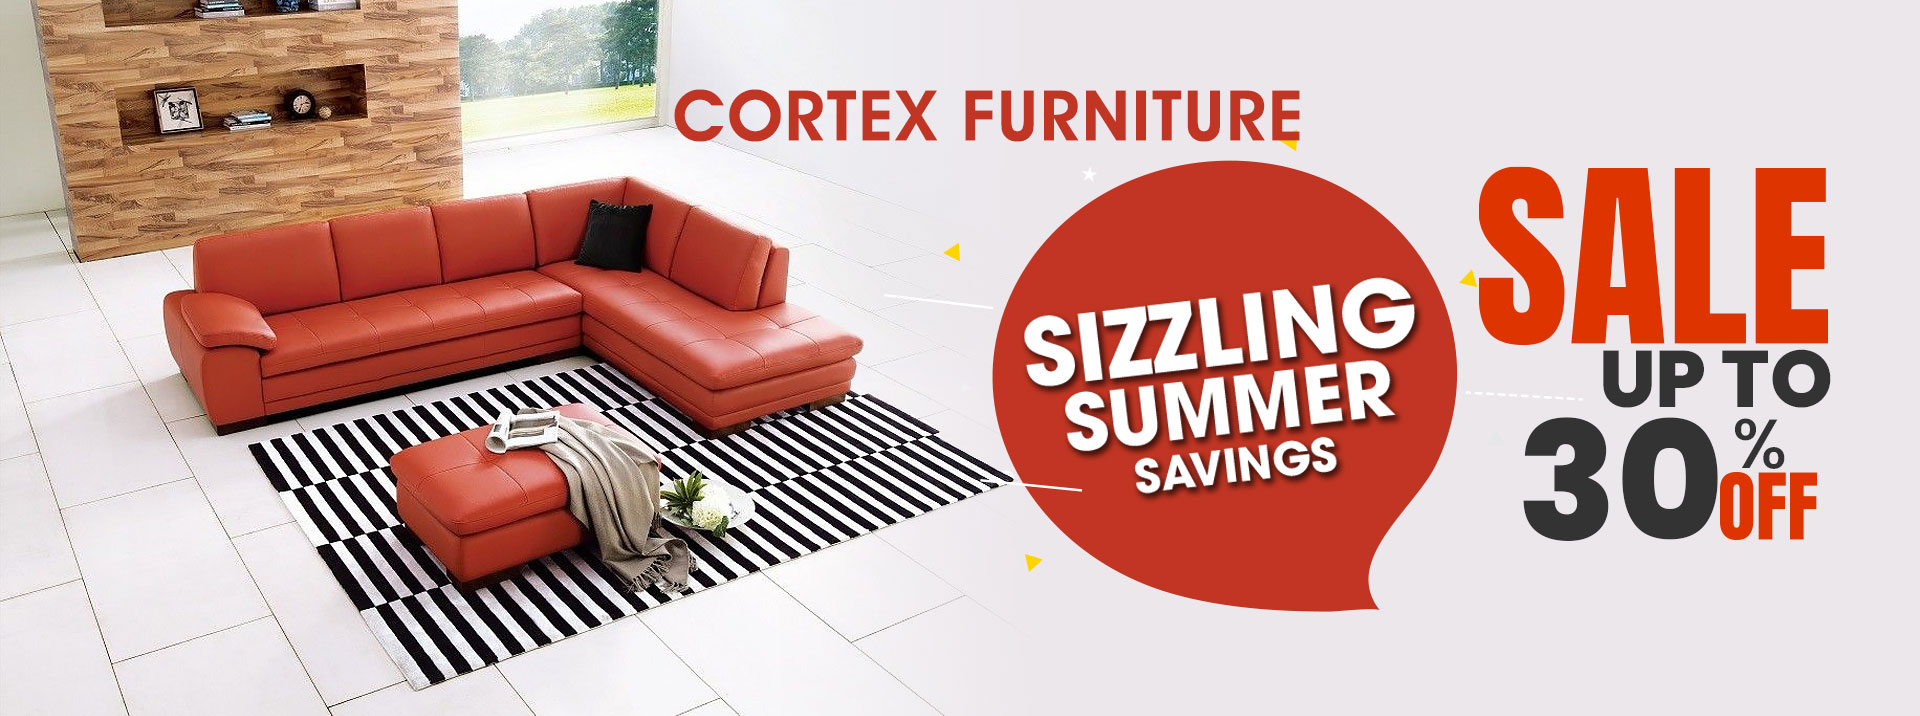 Cortex Furniture Summer Specials